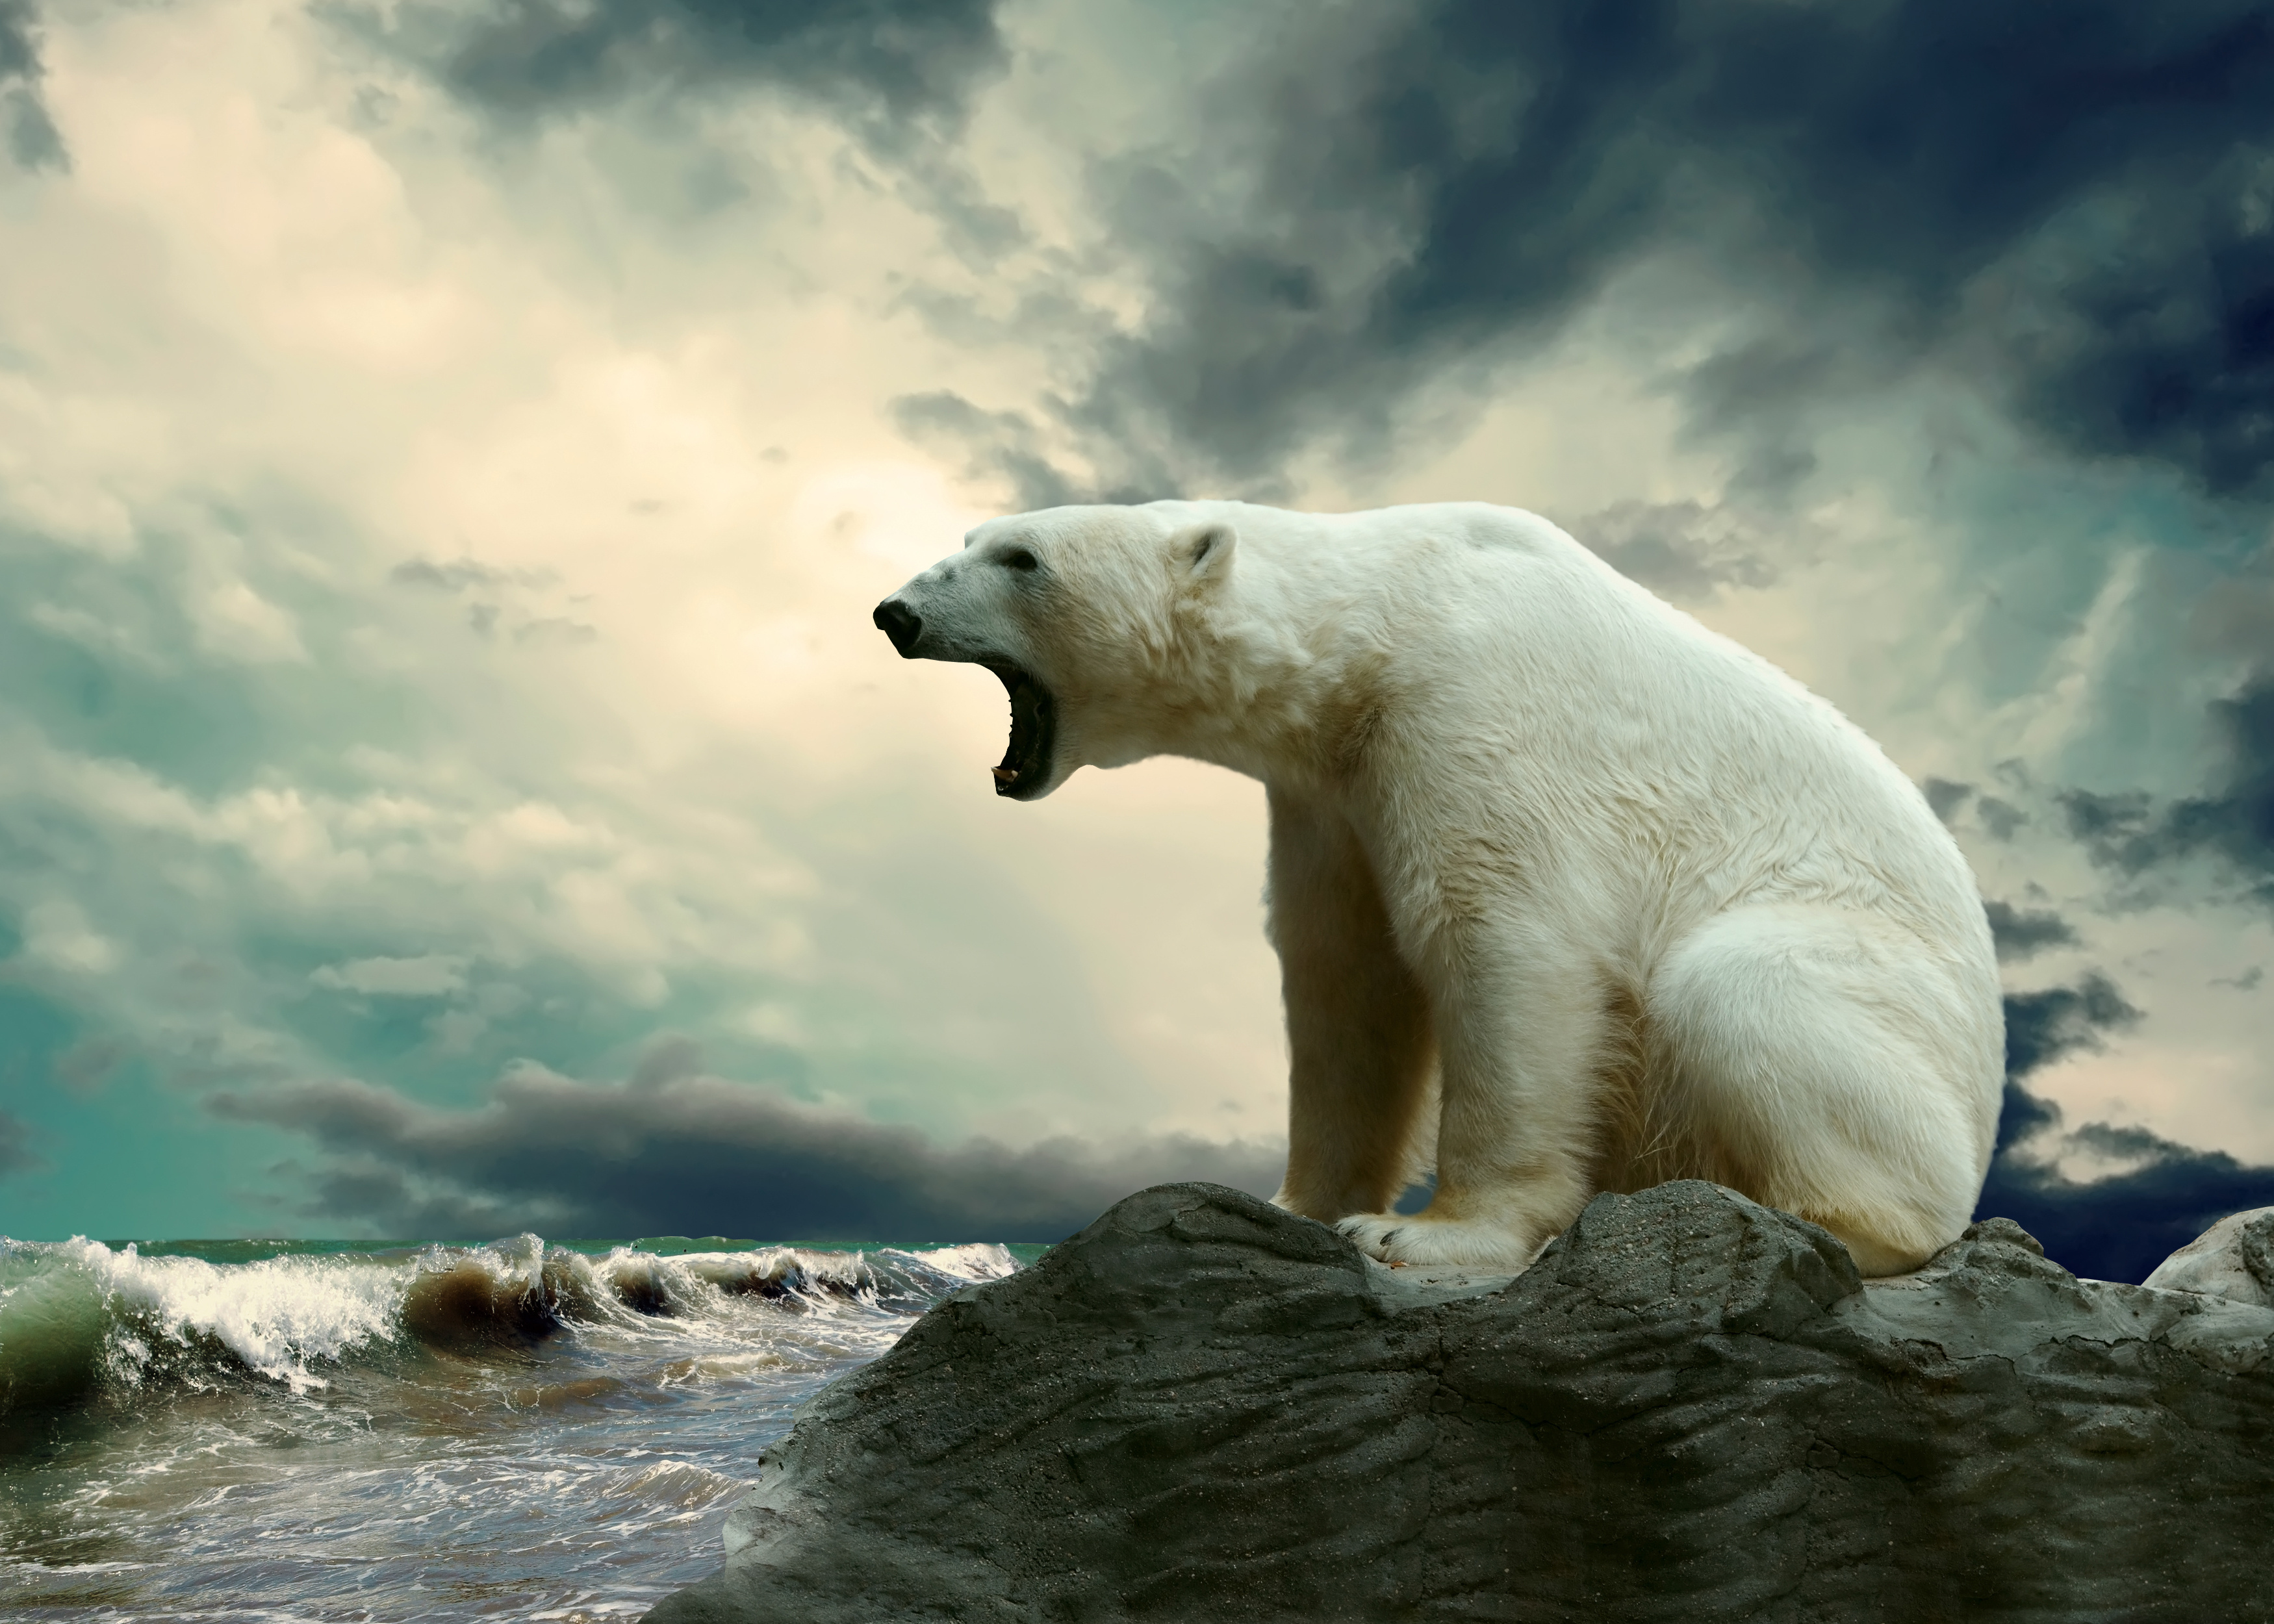 La disparition toujours plus grande et longue de la banquise en été menace les ours polaires. © Andrii Iurlov, Adobe Stock